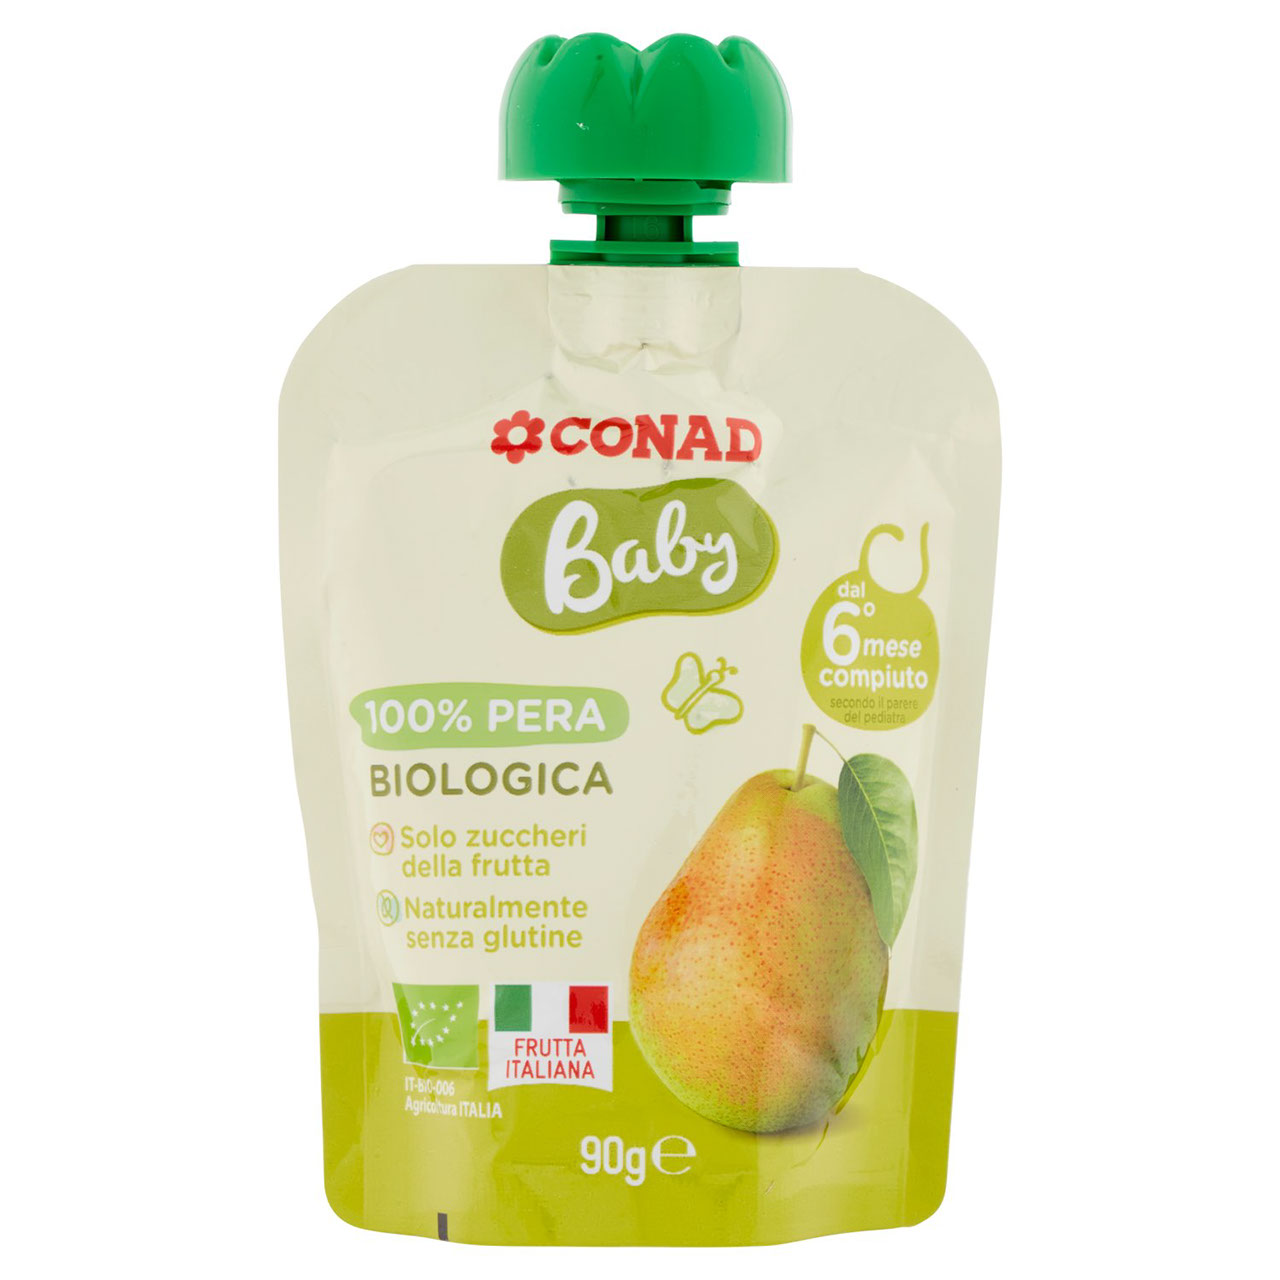 Baby 100% Pera Biologica 90 g Conad online